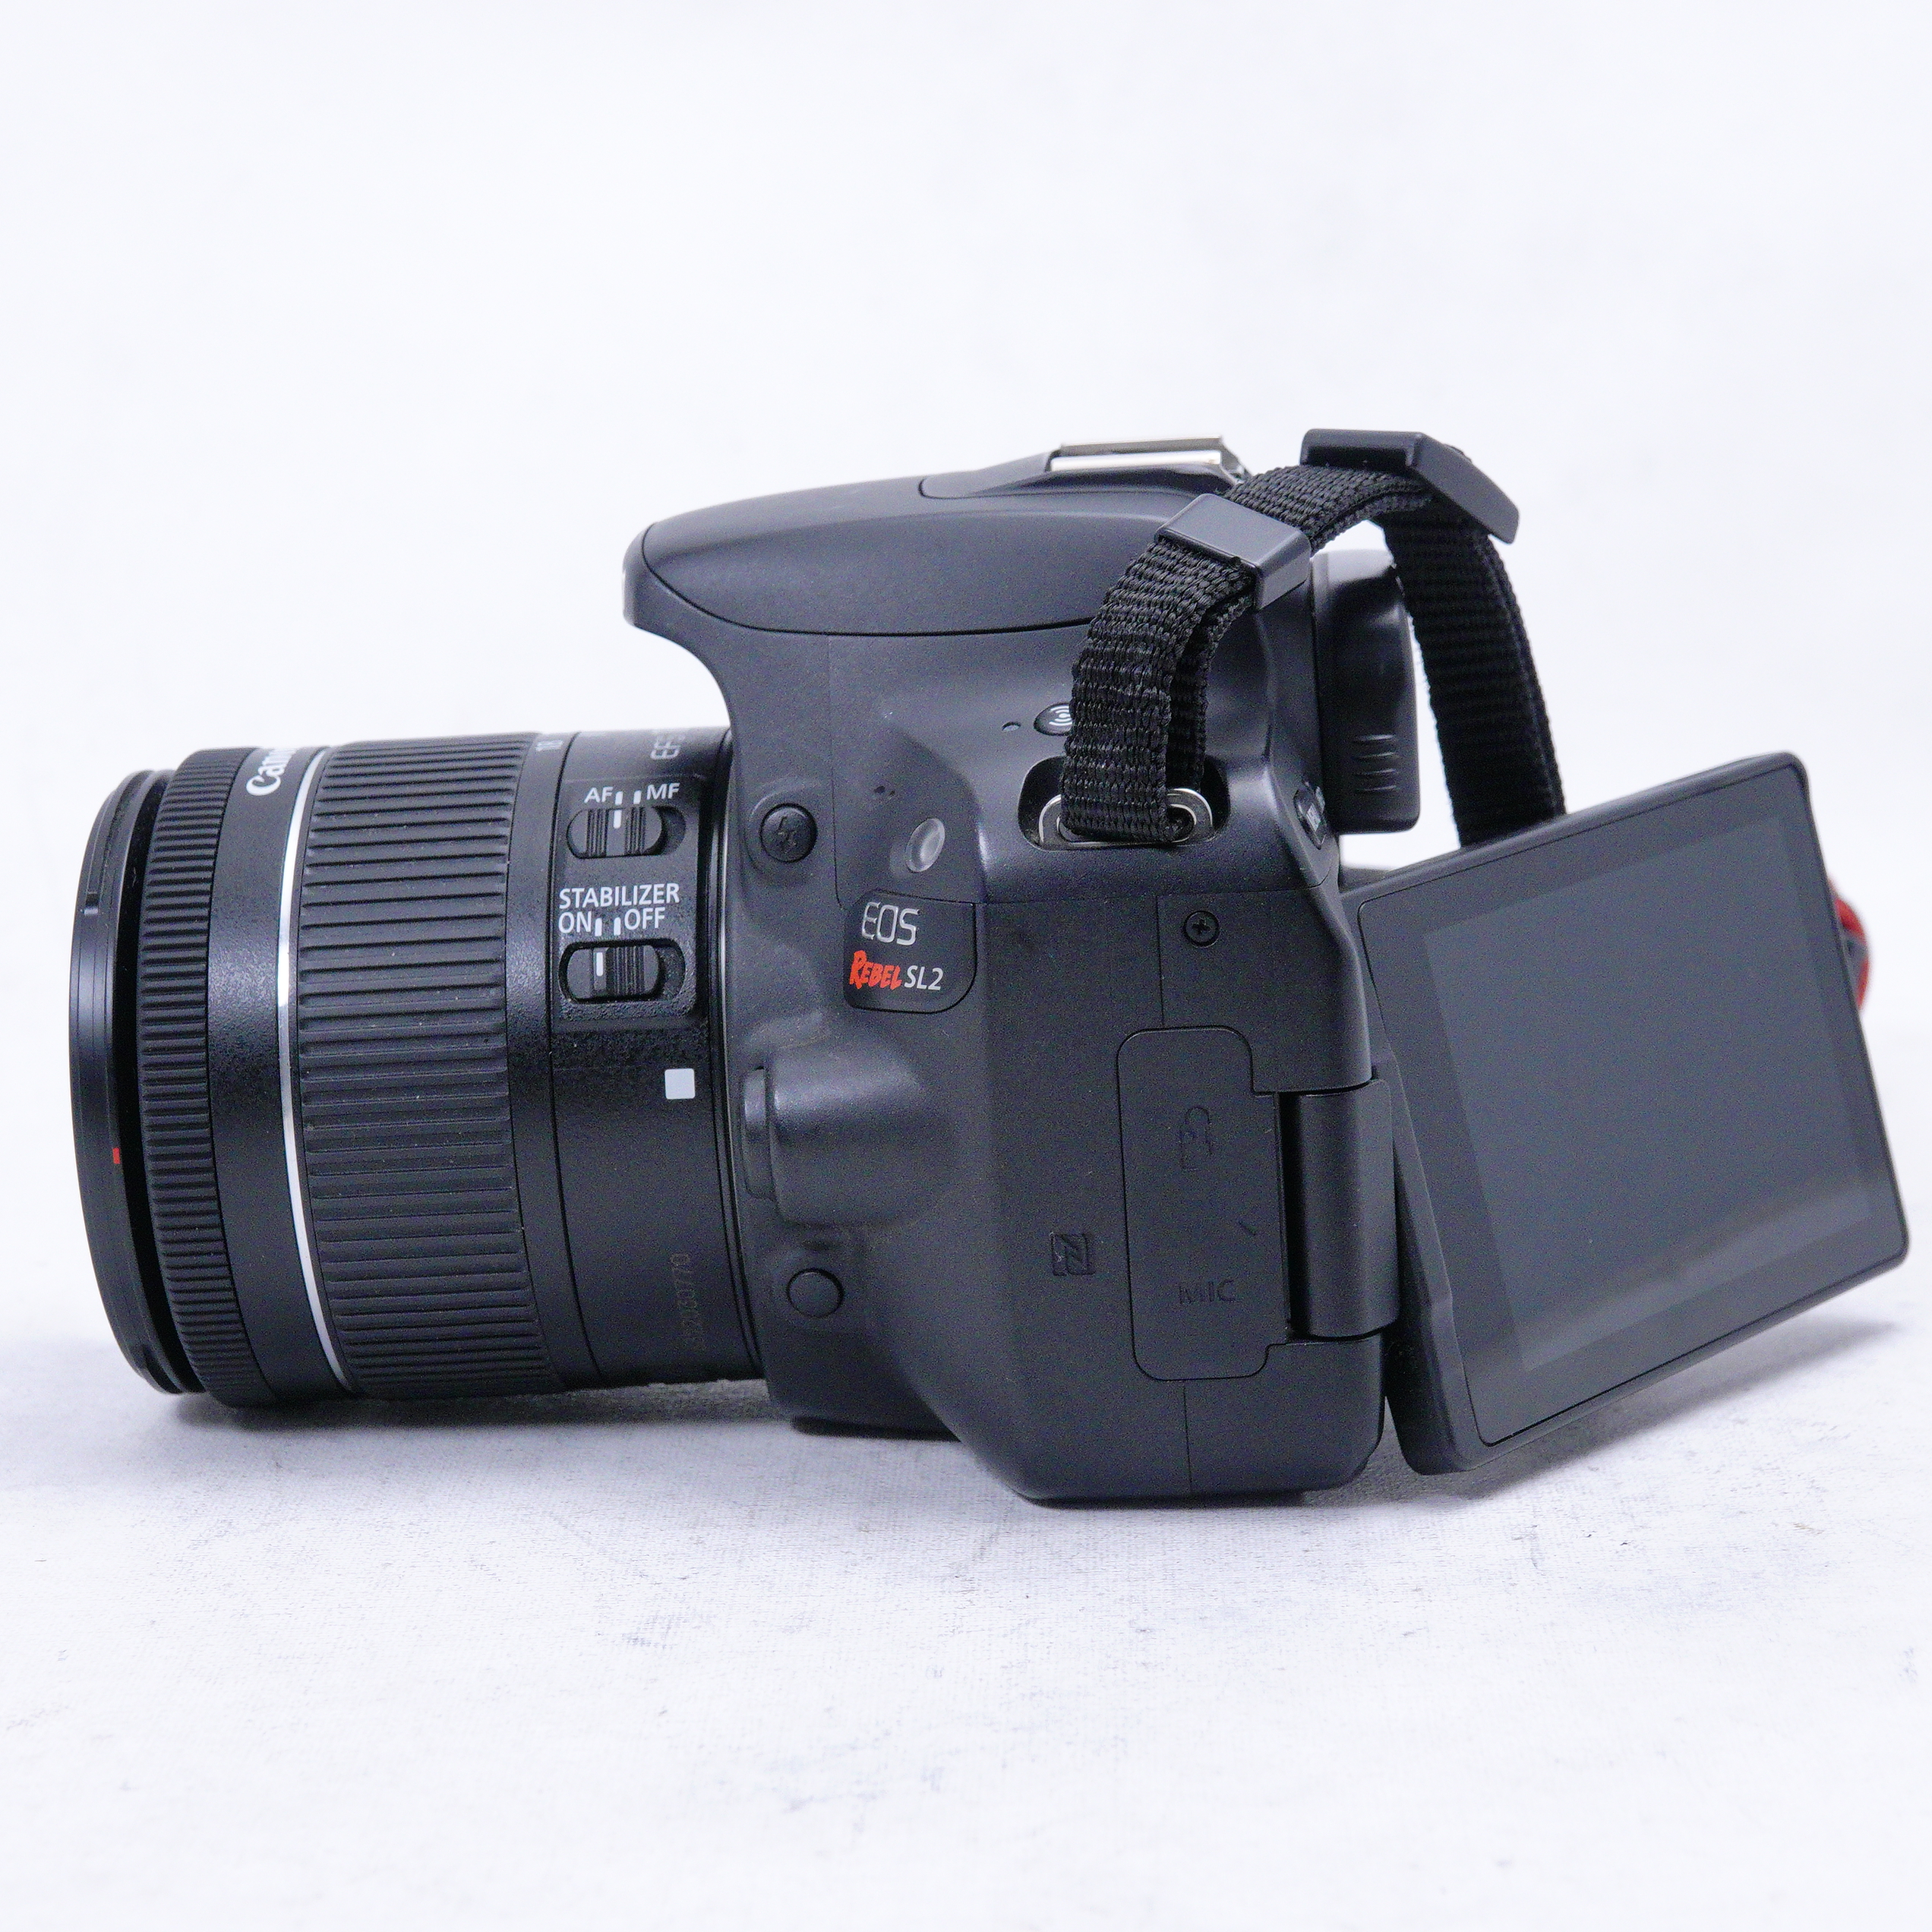 Evaluamos la cámara EOS Rebel SL2 de Canon [VIDEO], TECNOLOGIA